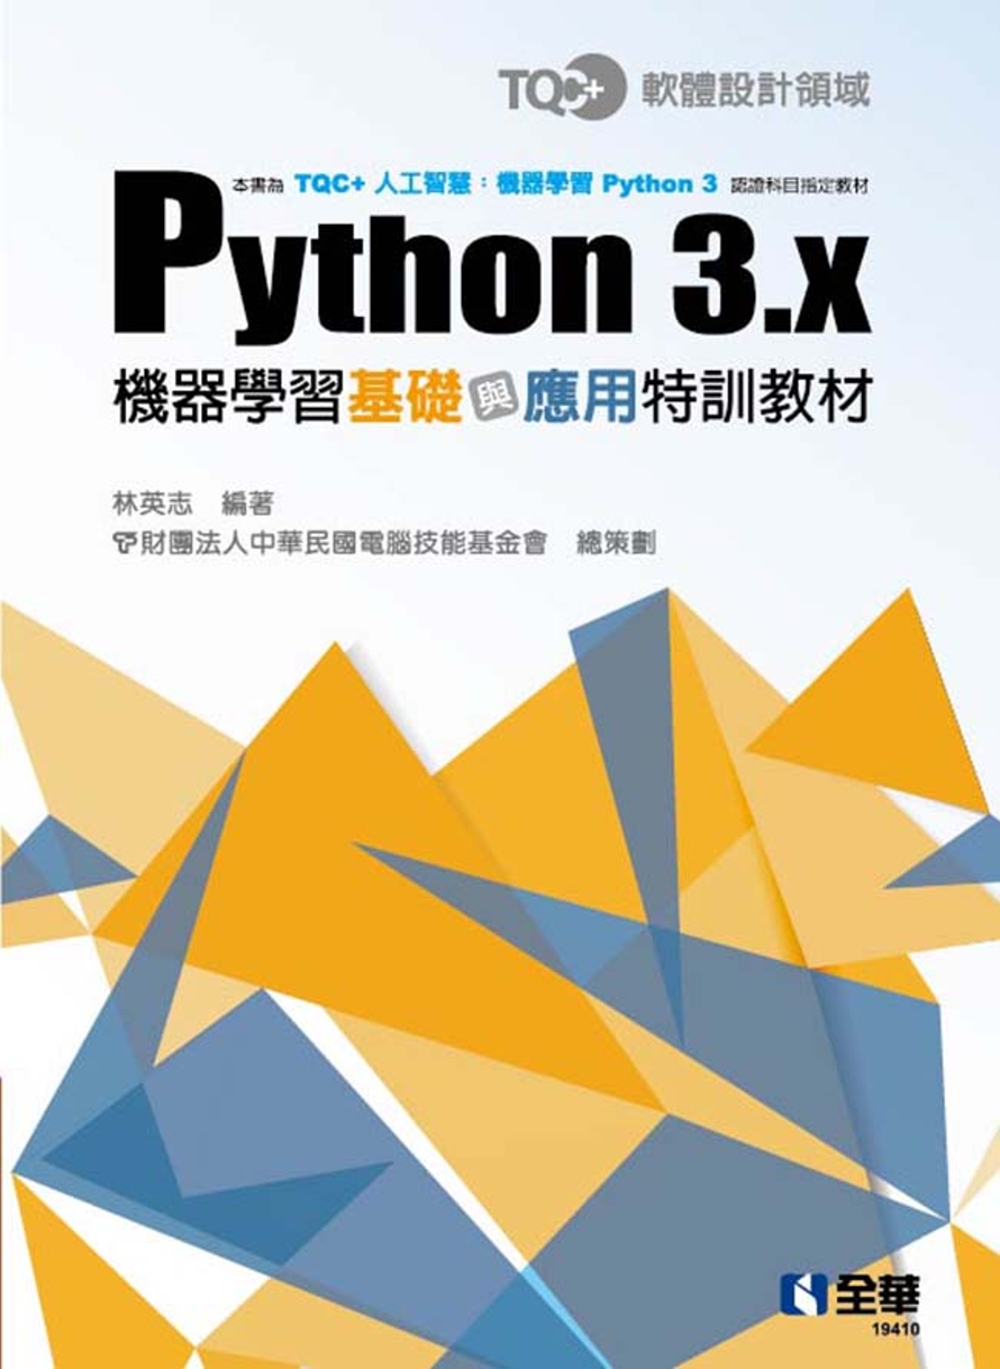 TQC+ Python 3.x機器學習基礎與應用特訓教材 